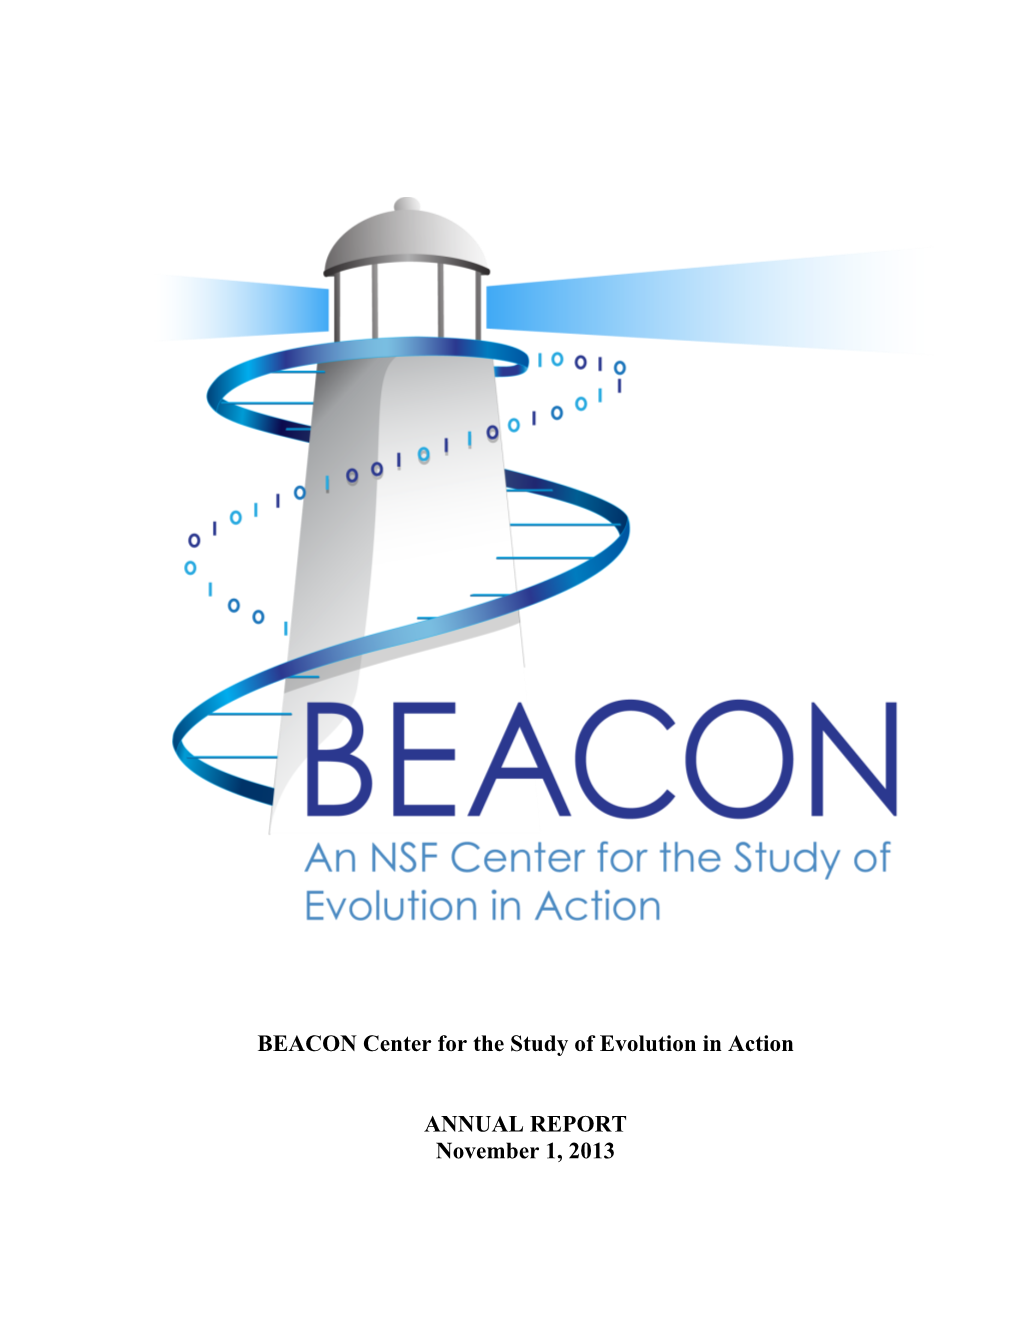 BEACON 2013 Annual Report I